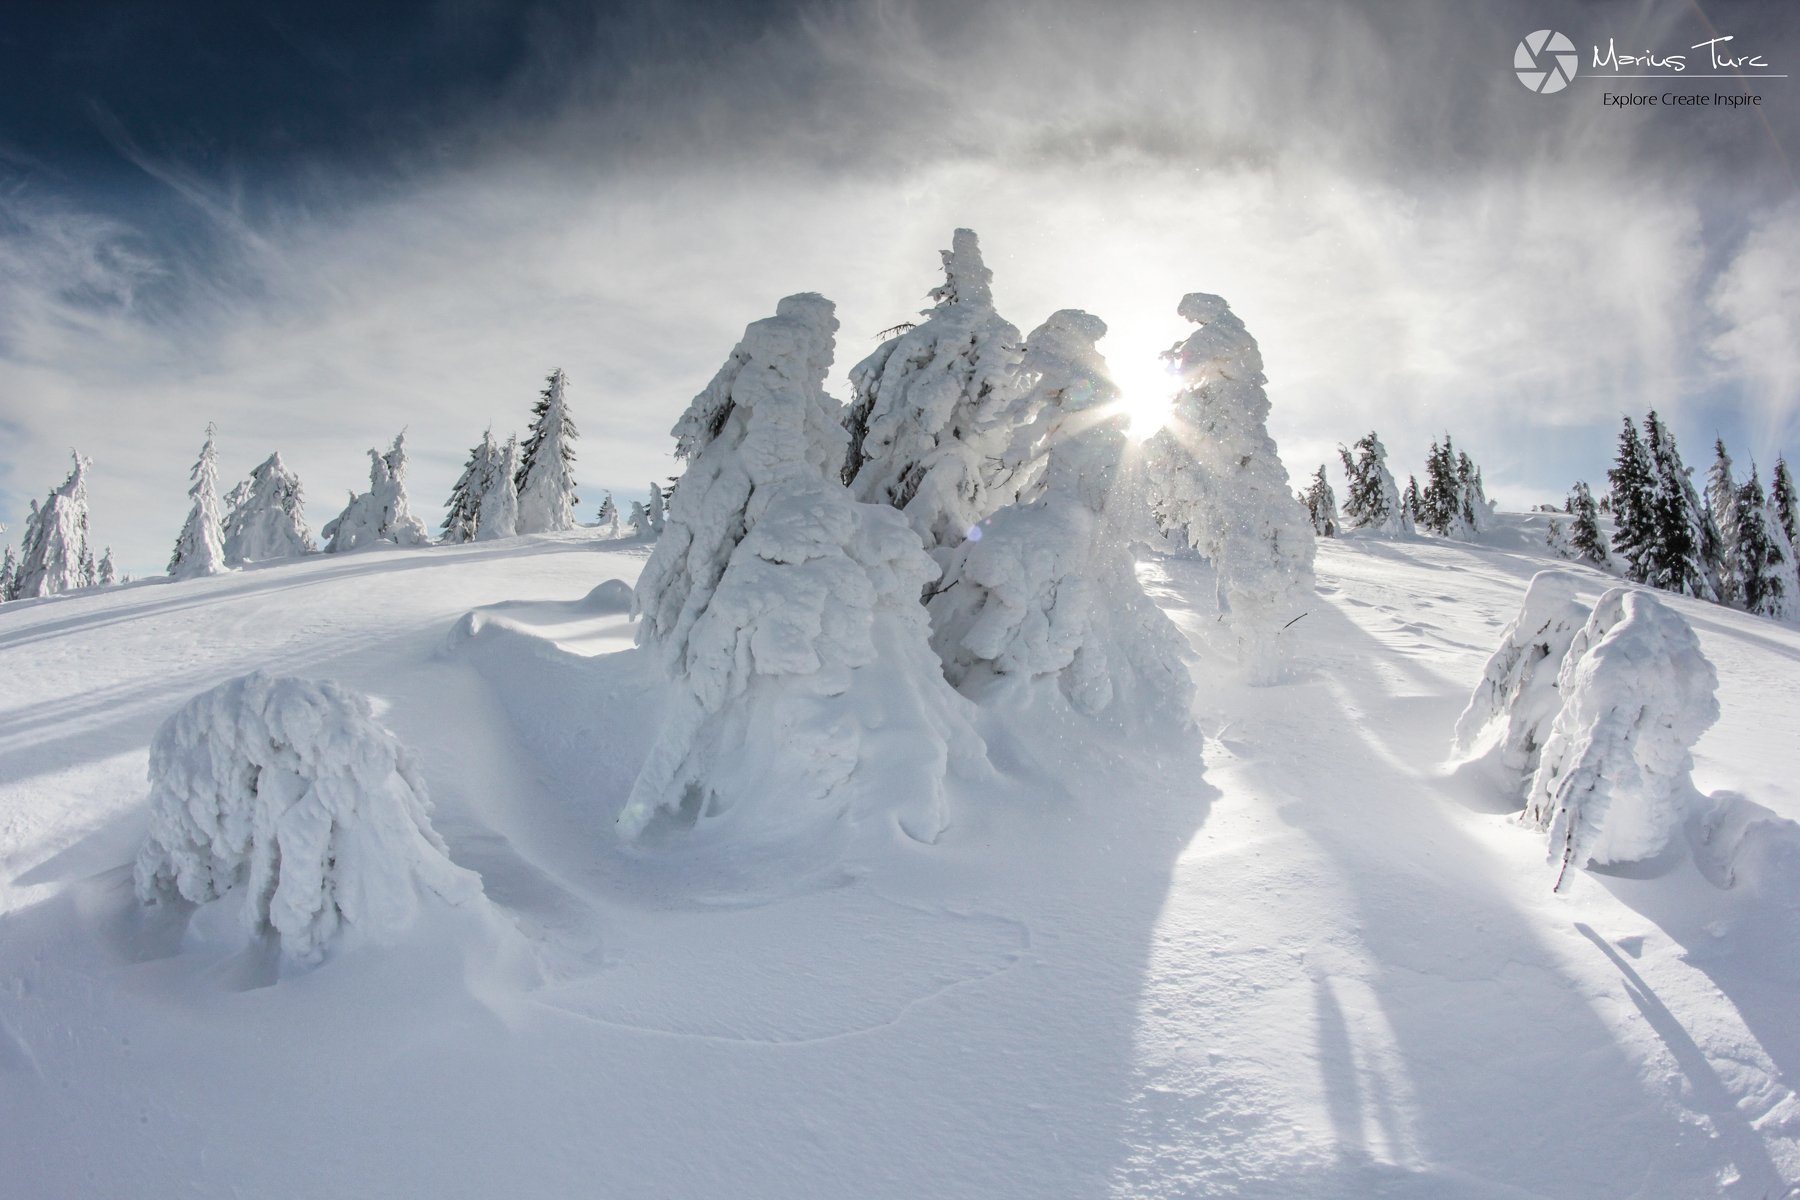 snow,trees,winter,frozen,sky,sun,light, Marius Turc